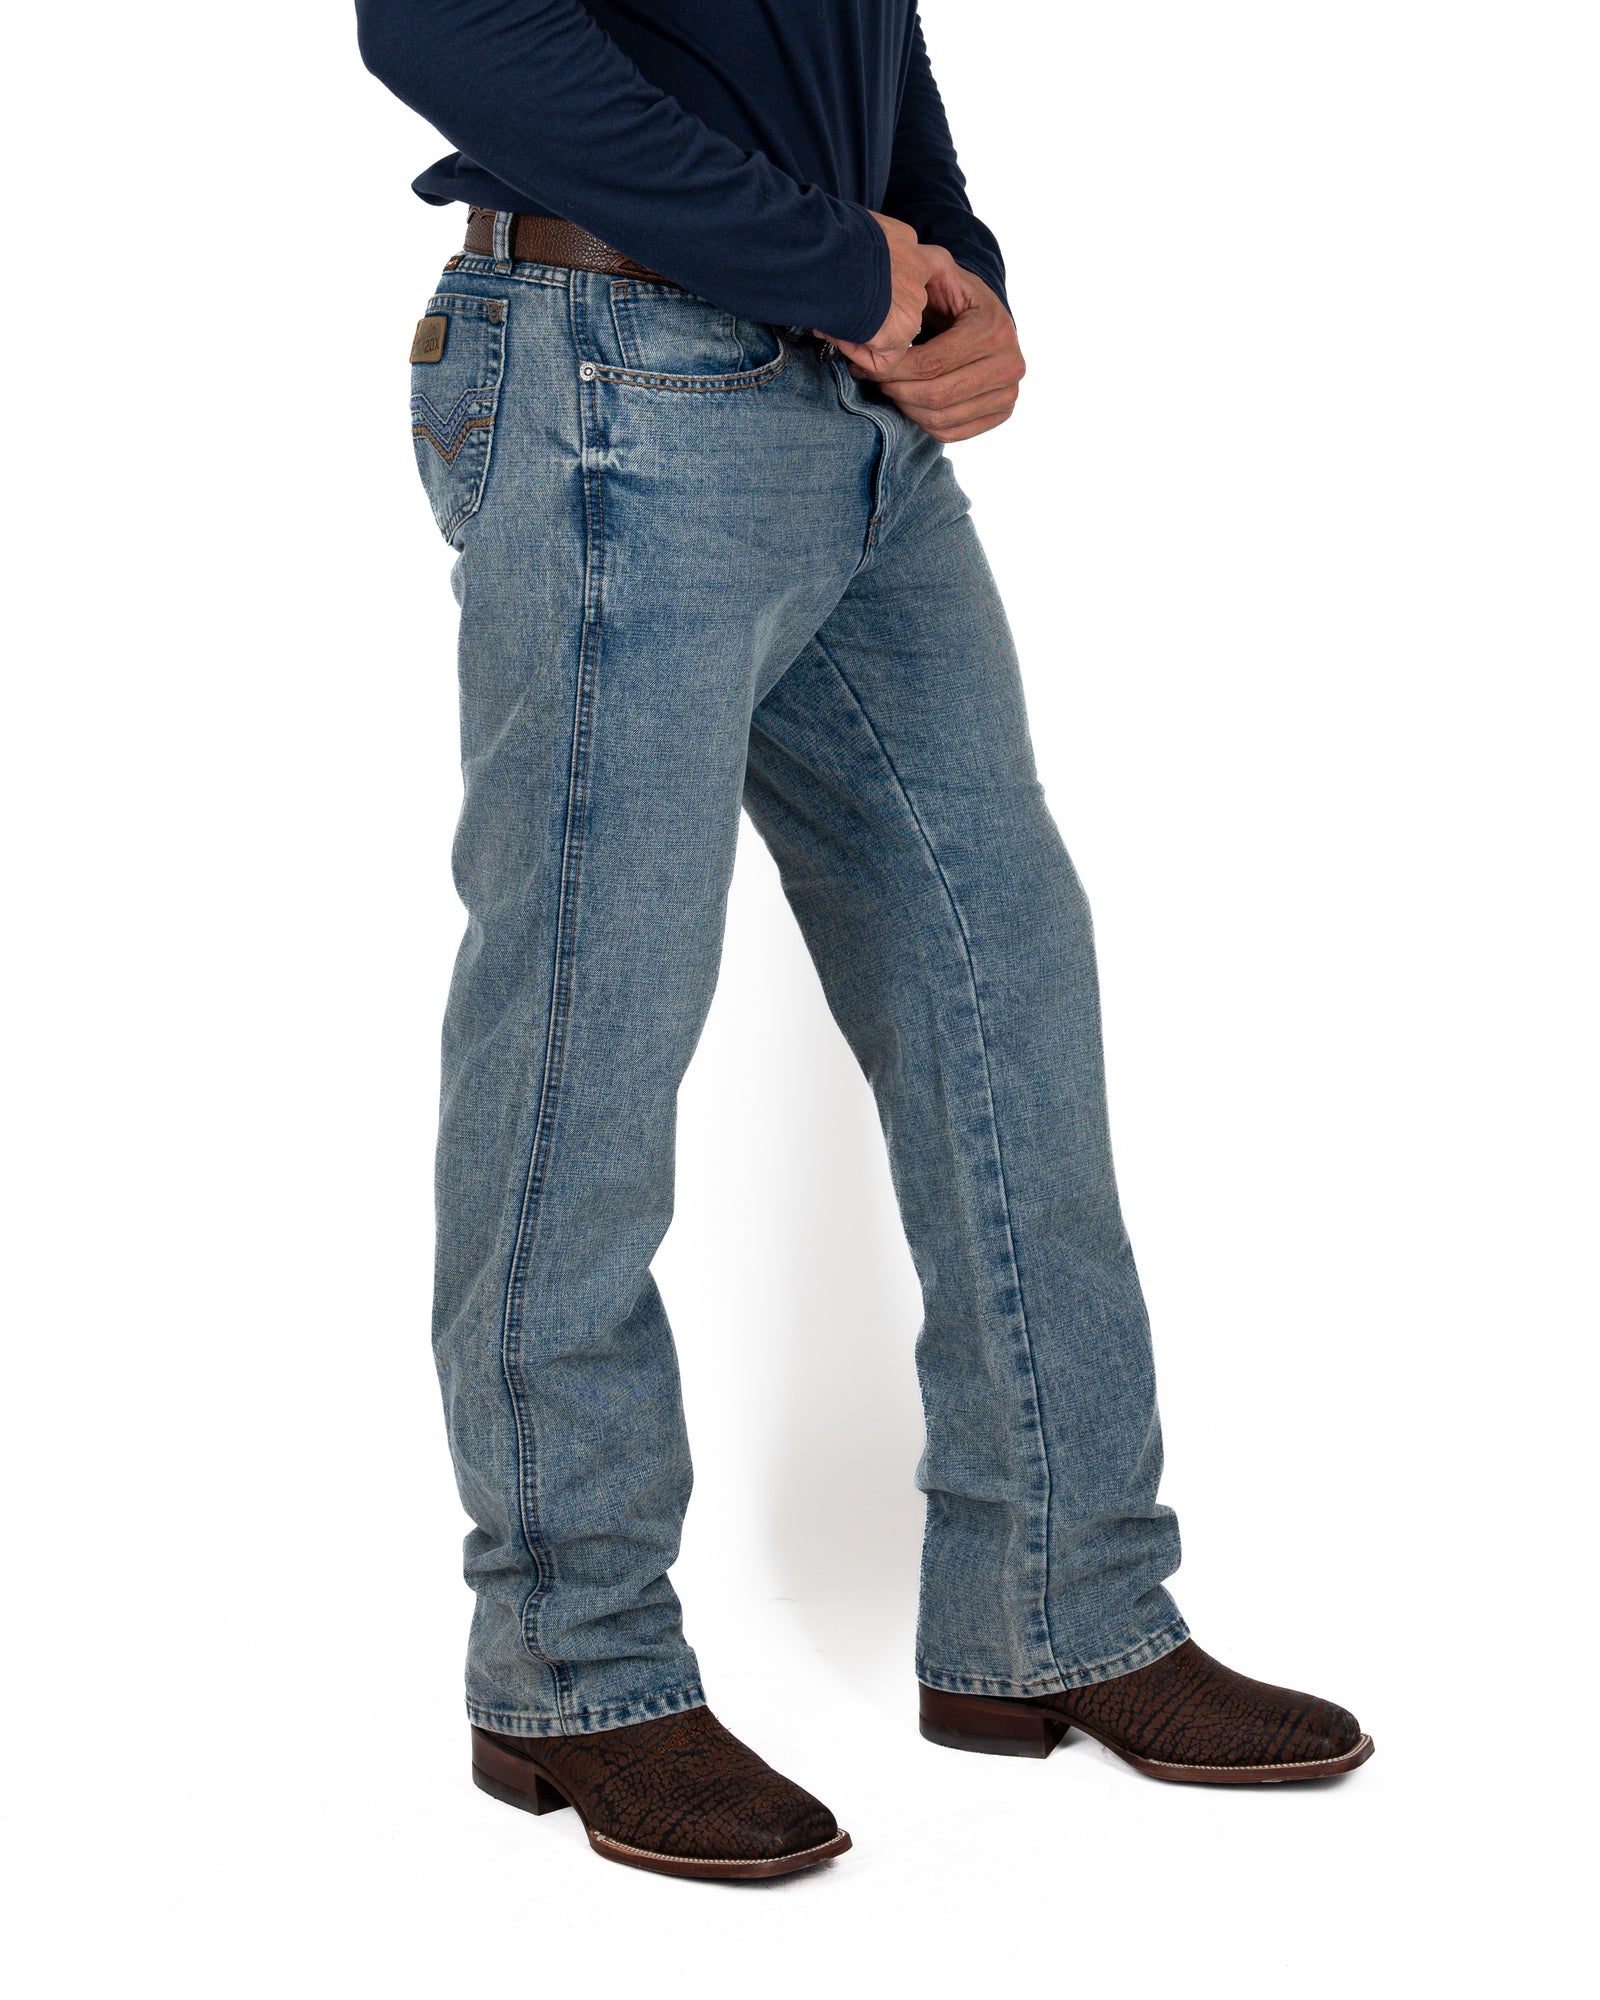 Jeans Wrangler 20 X Caballero